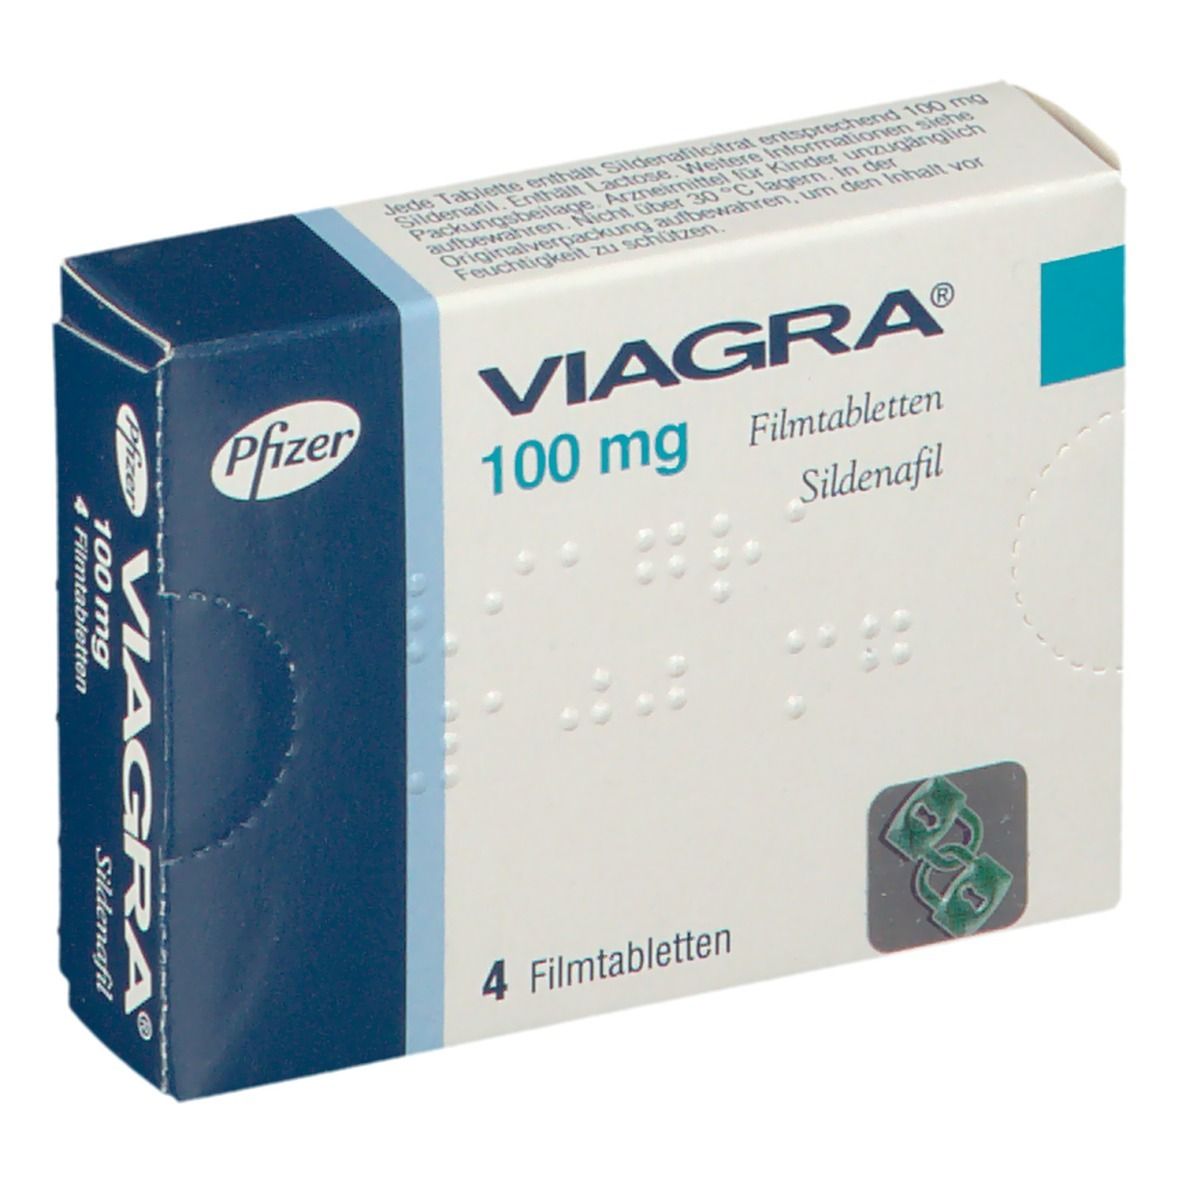 Viagra für frauen